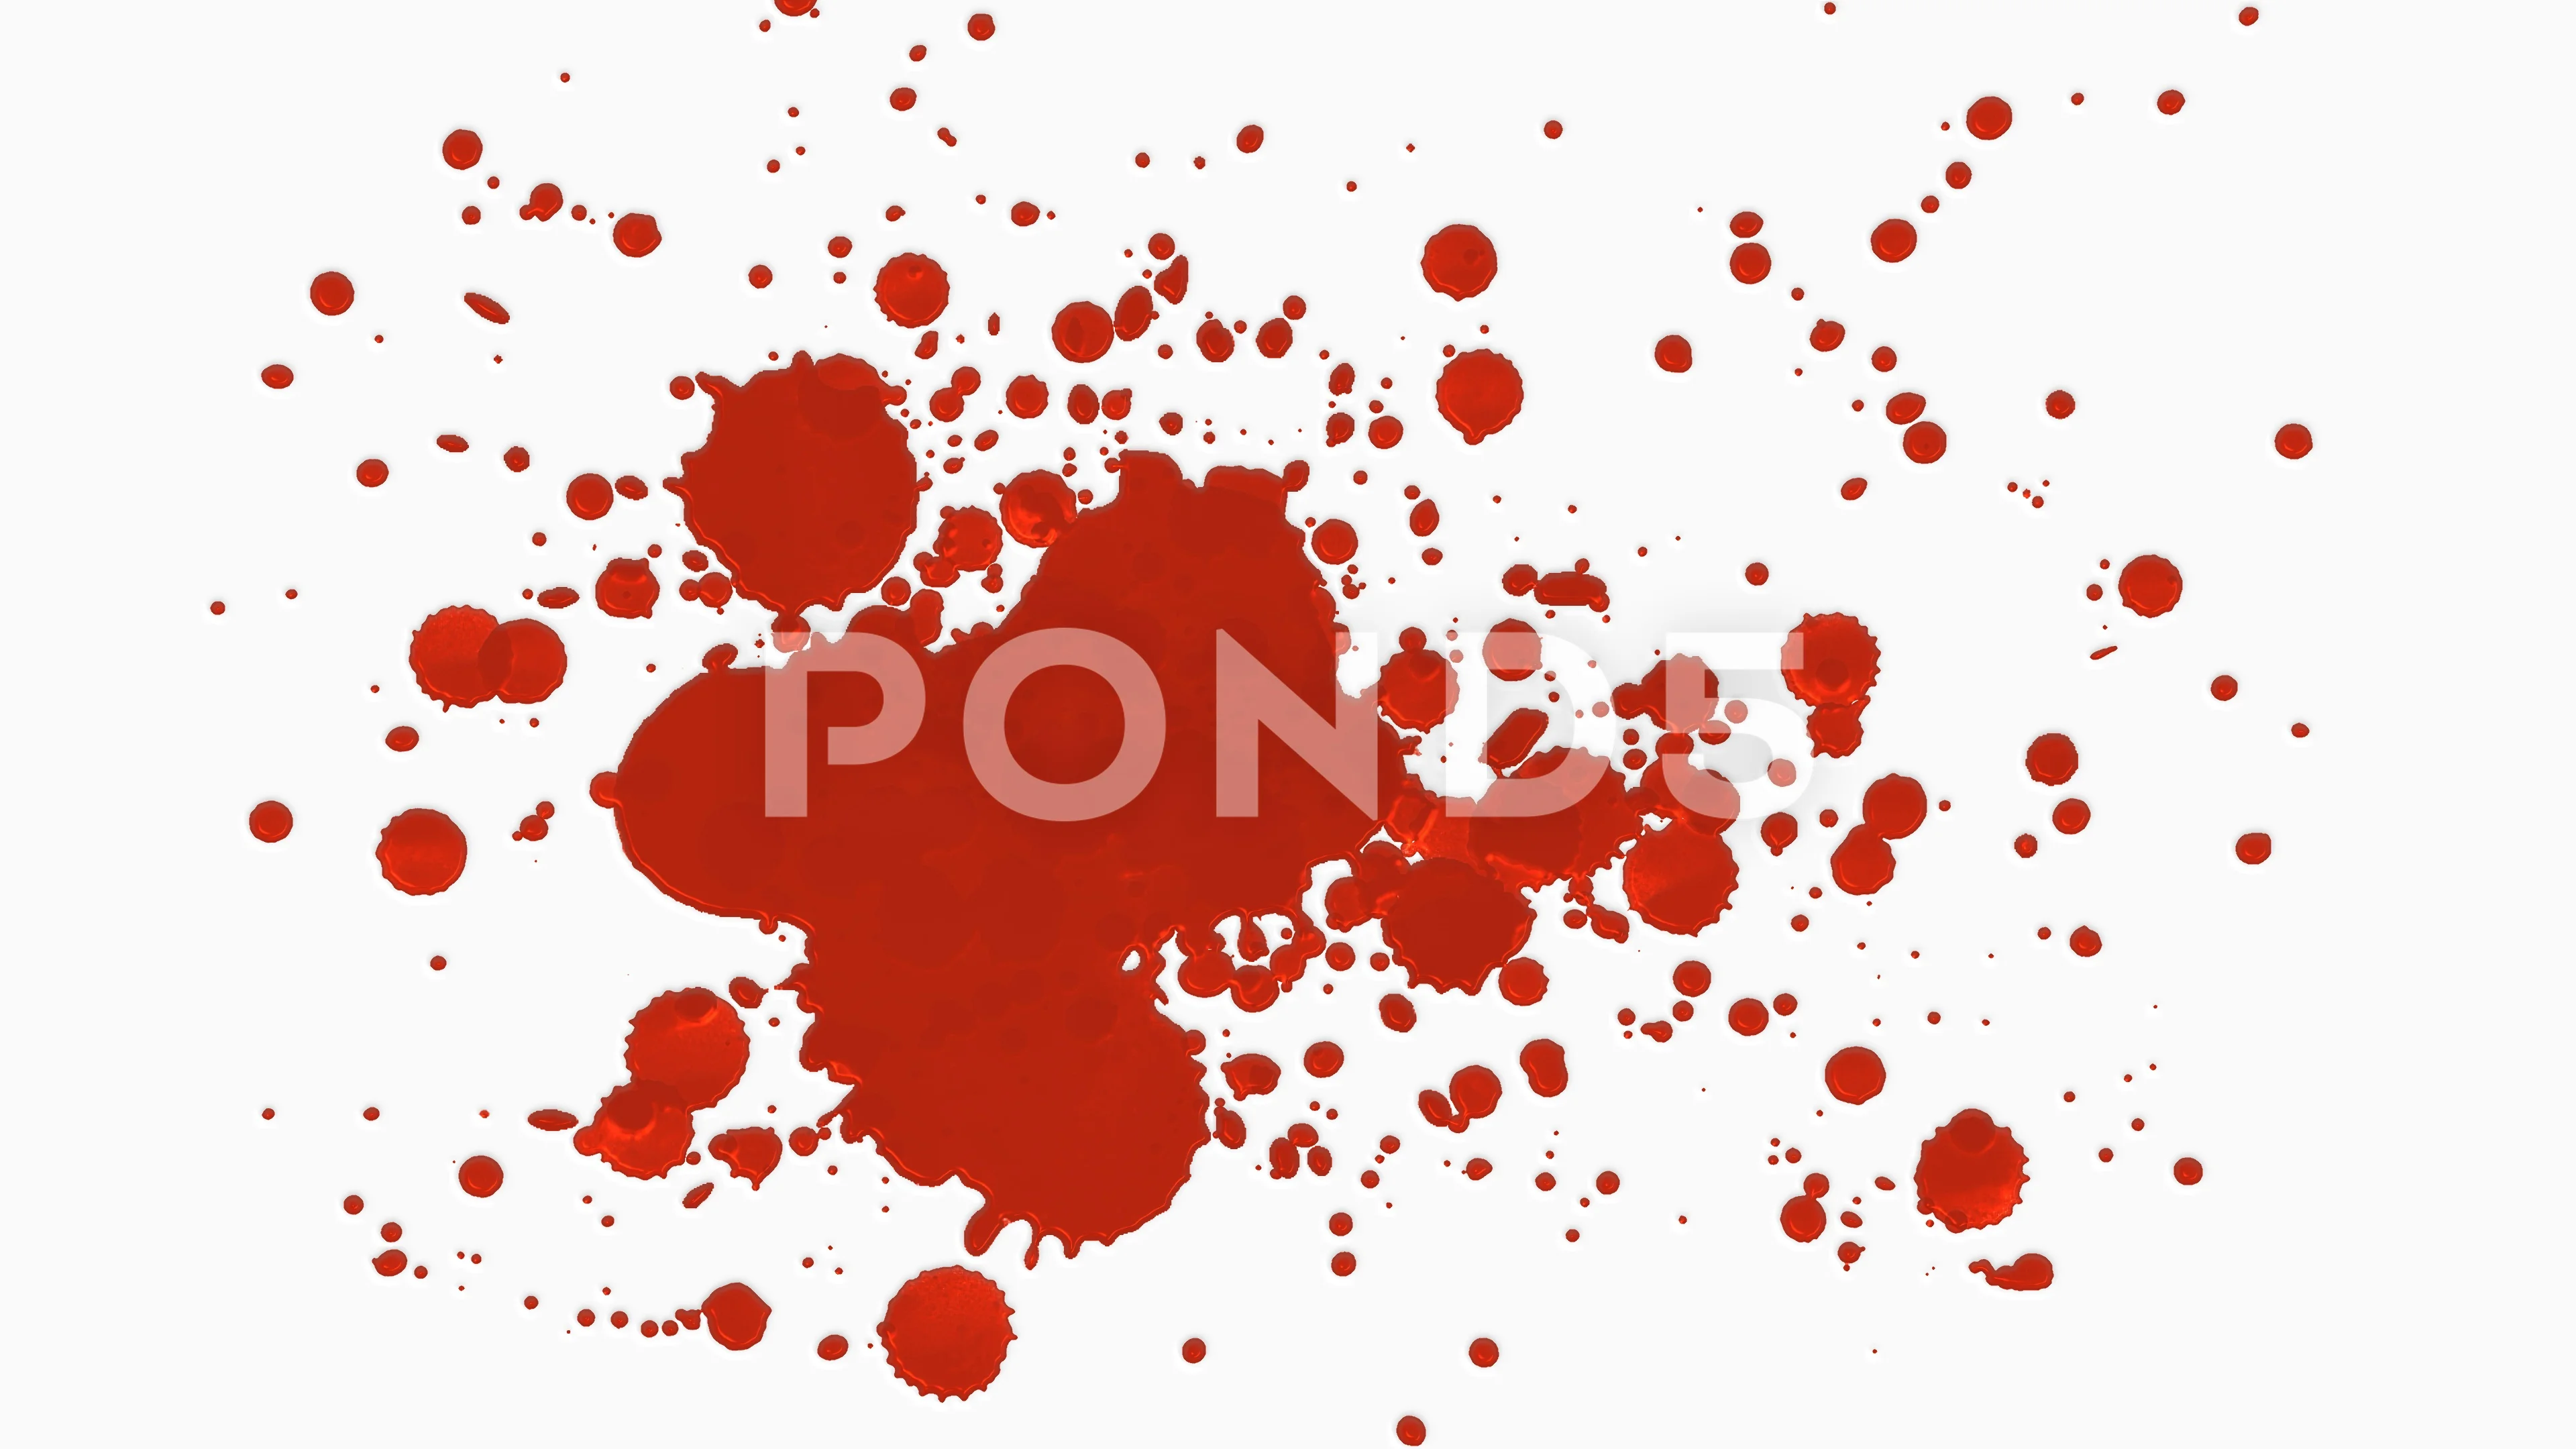 Blood or Ink Splatter Effect